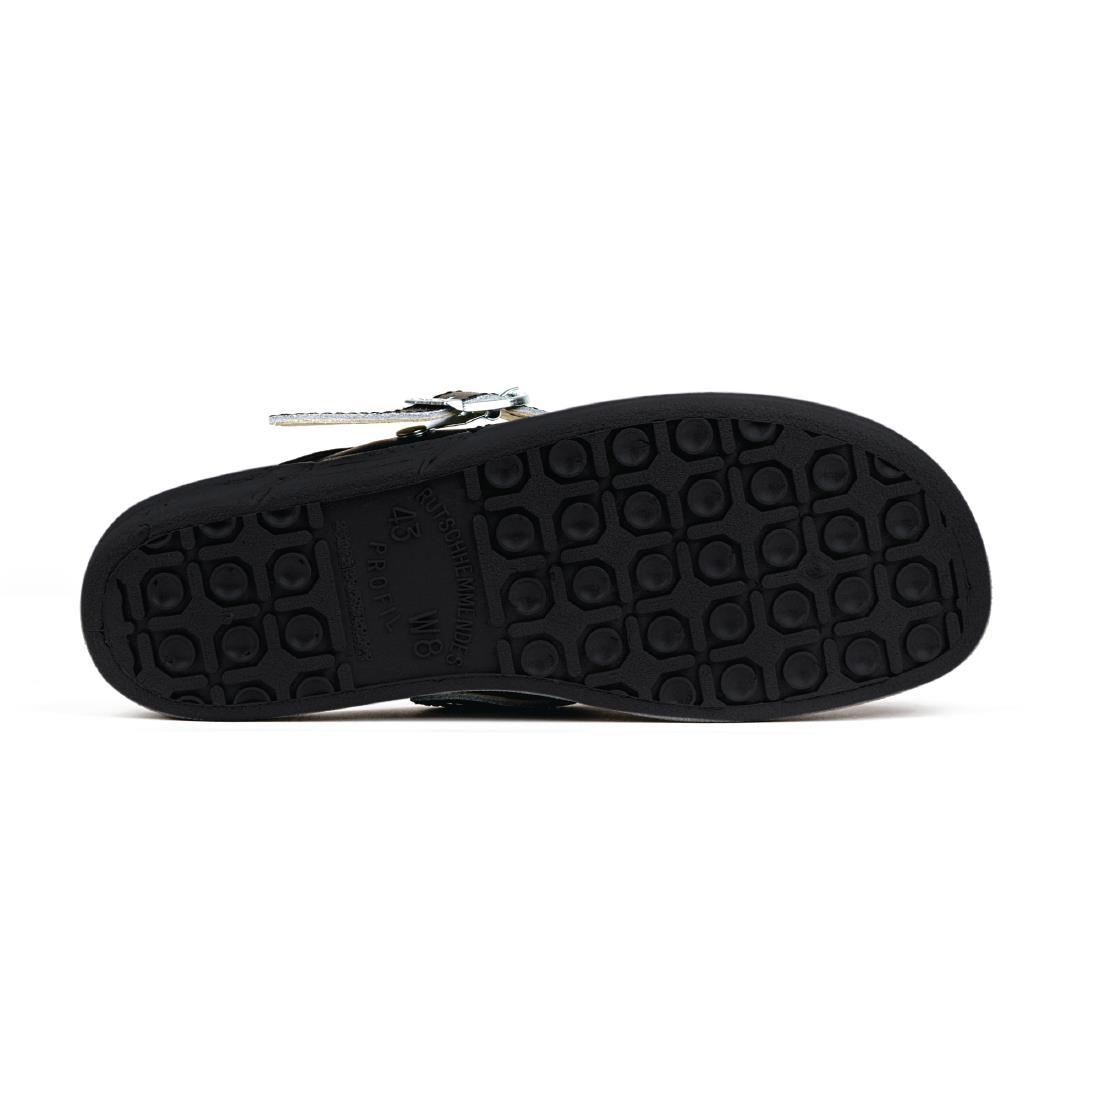 Abeba Microfibre Clogs Black Size 36 - A898-36  - 4